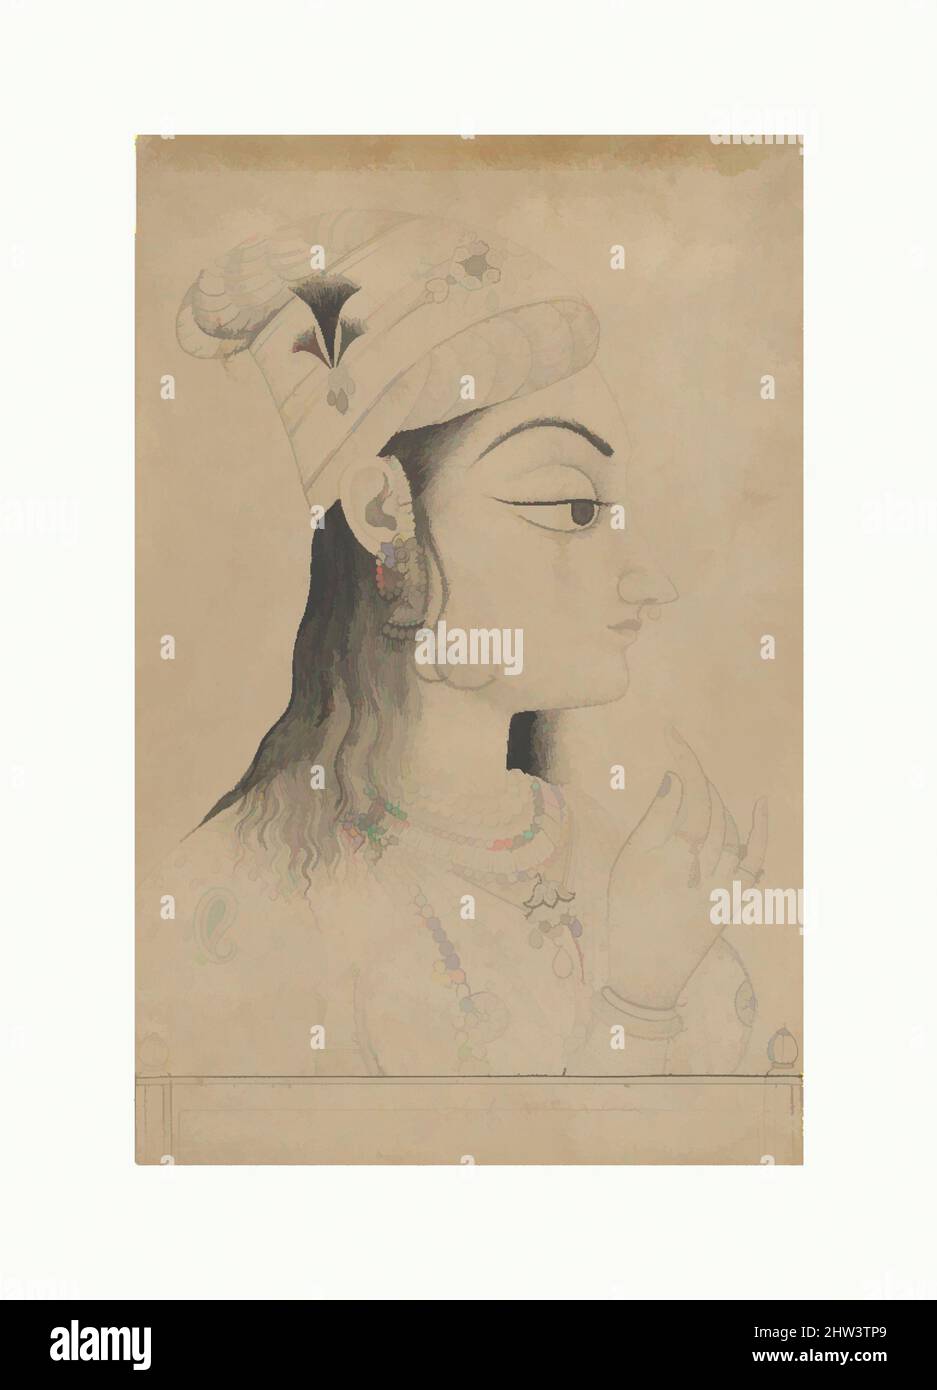 Arte ispirata da Donna con un Turban vestito come Radha, fine 19th secolo, India (Rajasthan, Kishangarh), inchiostro e lavaggio su carta, immagine (vista): 13 3/8 x 8 5/8 pollici. (34 x 21,9 cm), dipinti, questa donna della corte di Kishangarh è vestita come Radha, amante di Krishna. La testa allungata e, opere classiche modernizzate da Artotop con un tuffo di modernità. Forme, colore e valore, impatto visivo accattivante sulle emozioni artistiche attraverso la libertà delle opere d'arte in modo contemporaneo. Un messaggio senza tempo che persegue una nuova direzione selvaggiamente creativa. Artisti che si rivolgono al supporto digitale e creano l'NFT Artotop Foto Stock